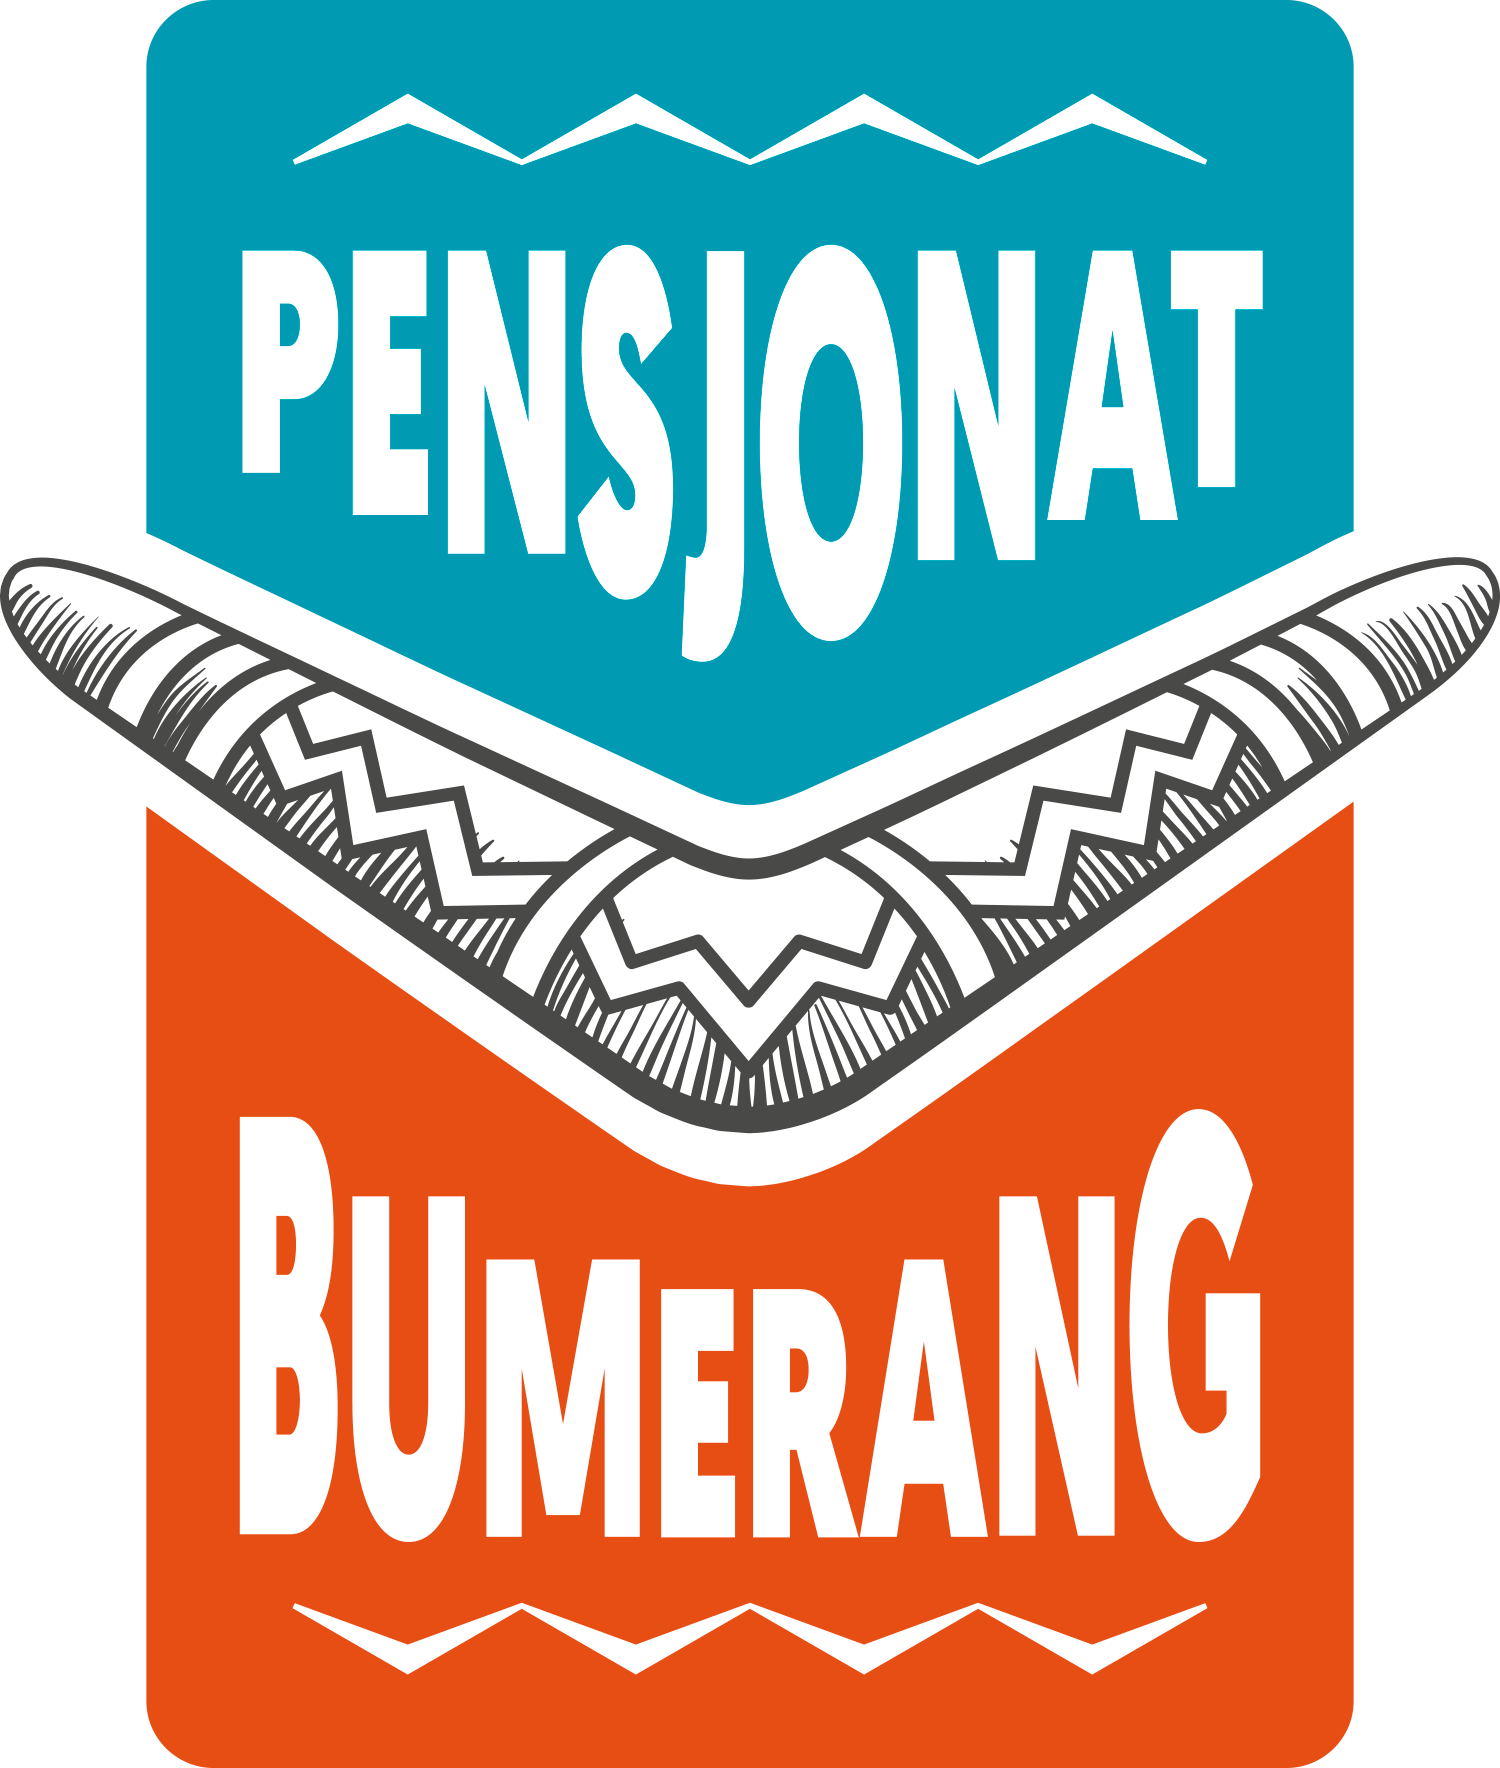 Pensjonat Bumerang - Pokoje Gościnne i Sale konferencyjne Logo